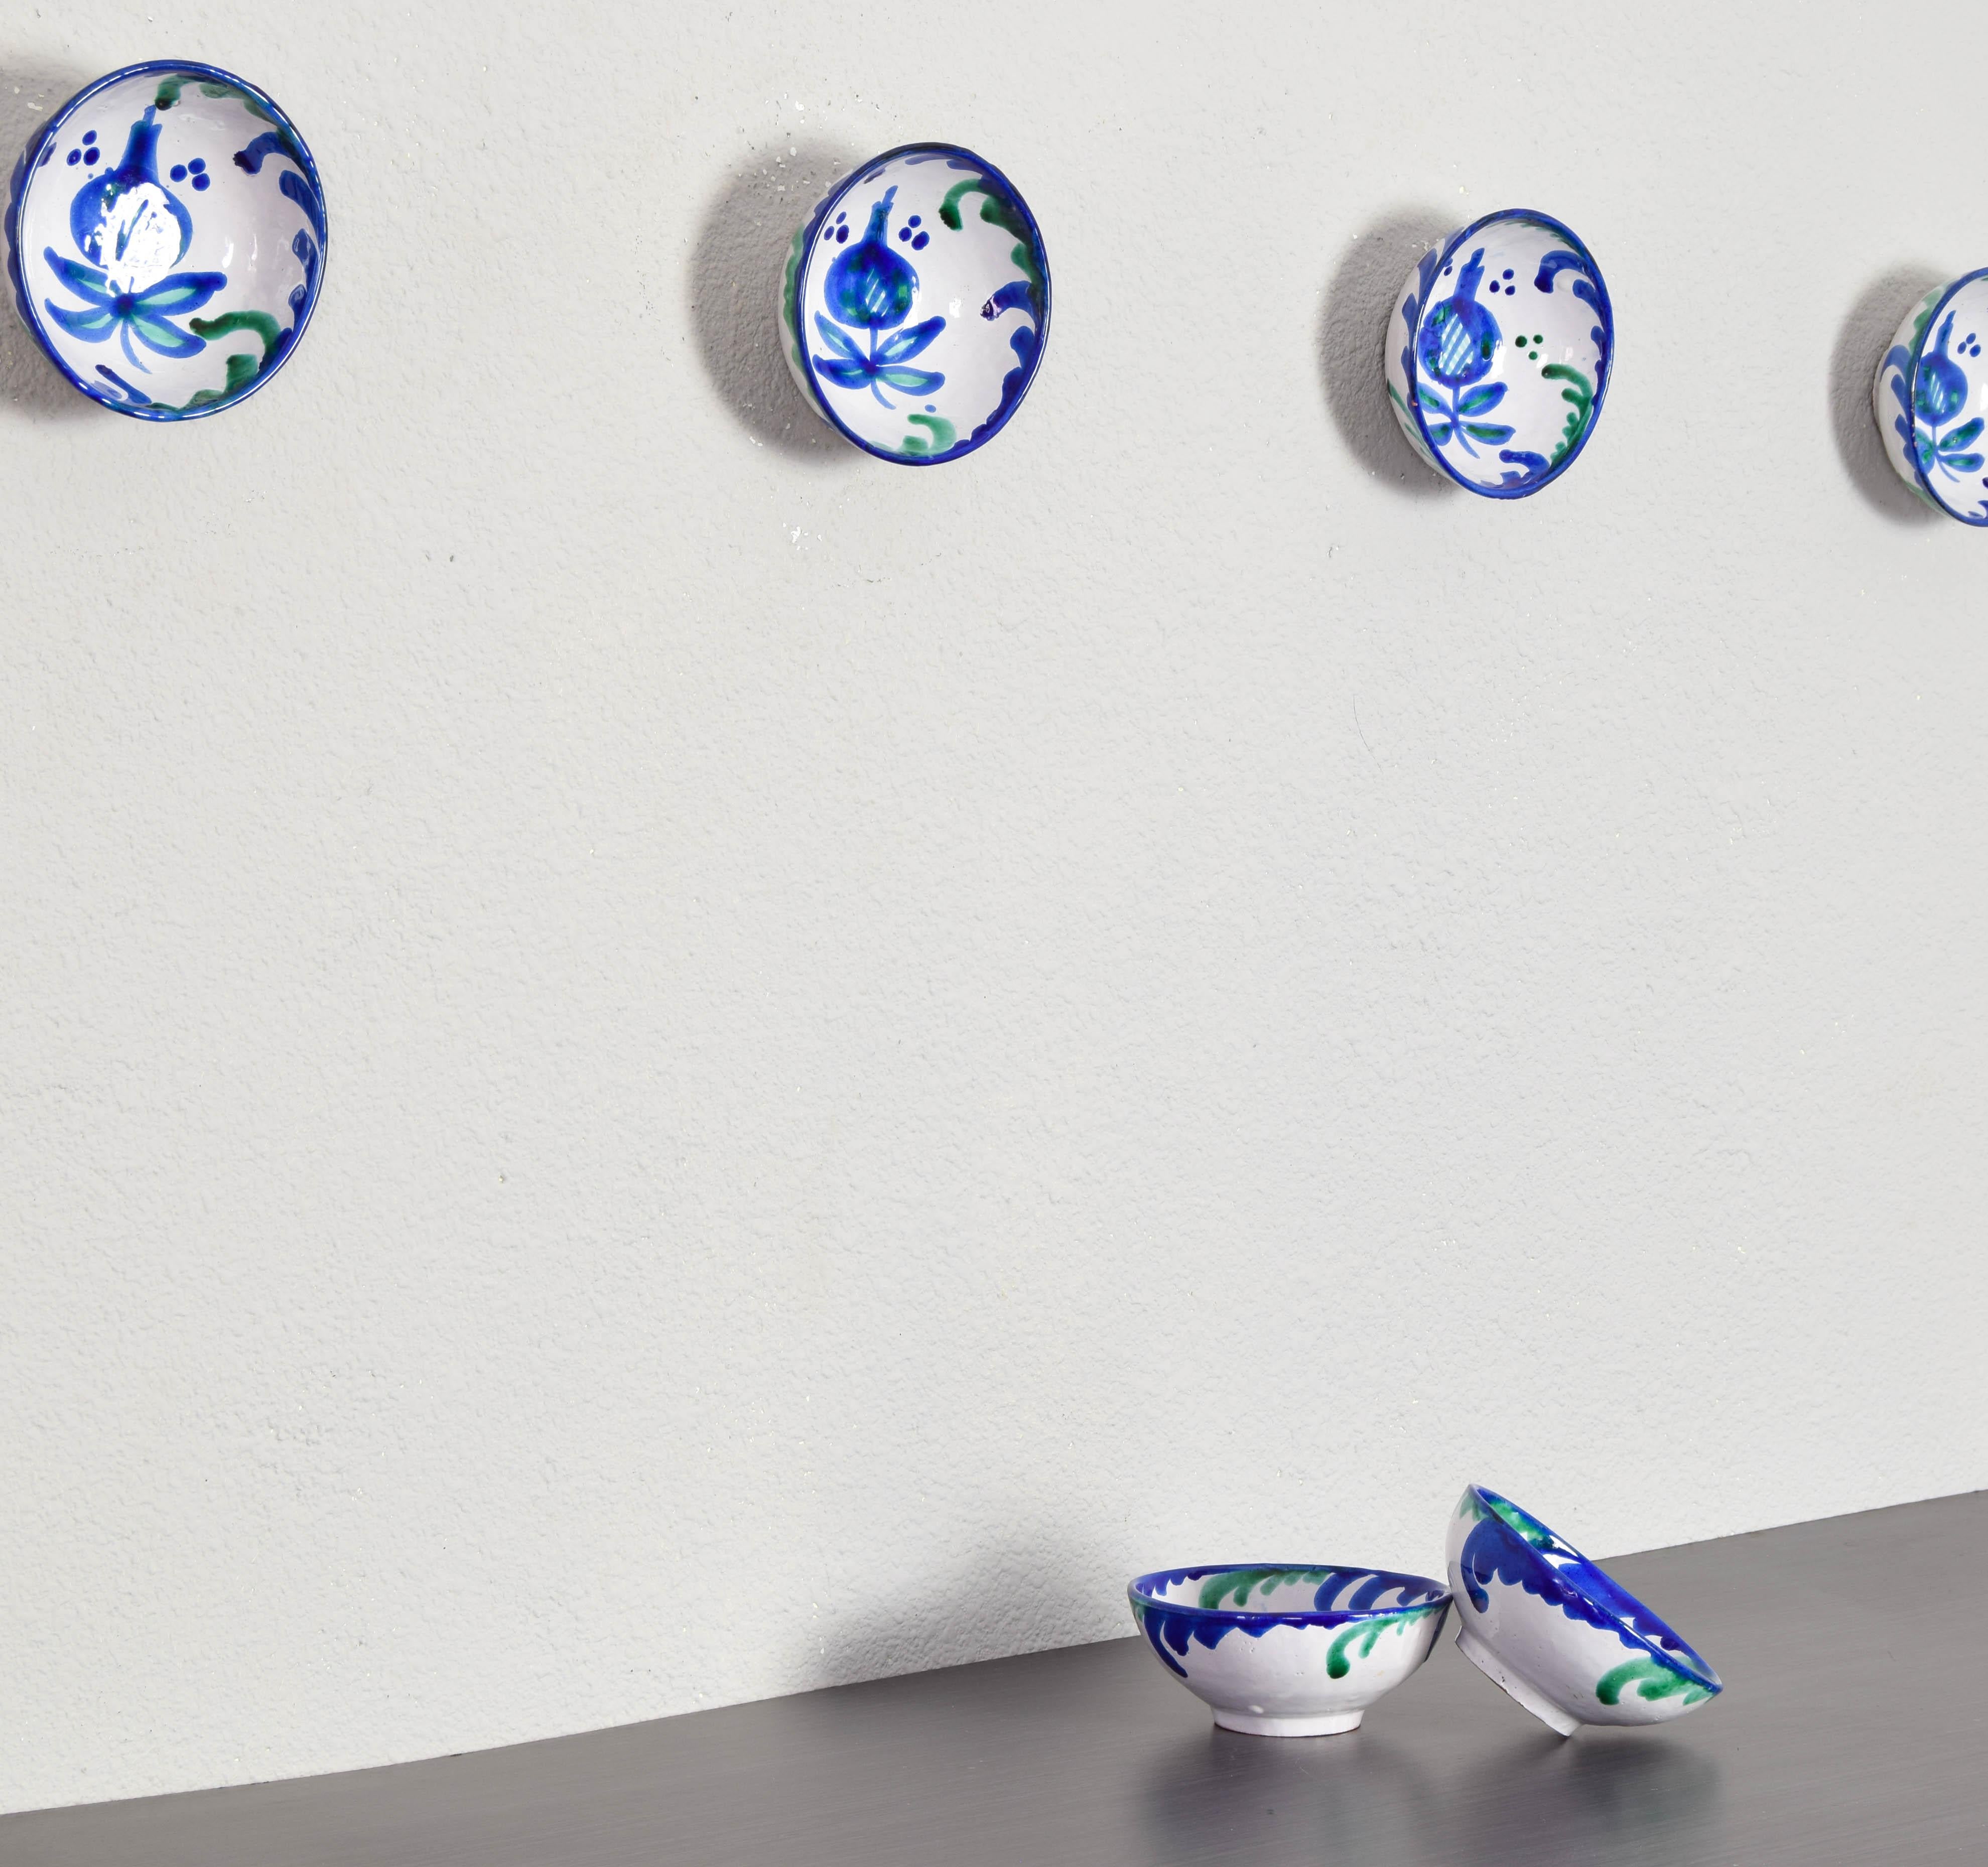 Ensemble de six bols décoratifs en céramique de terre cuite émaillée bleue, verte et blanche Fajalauza espagnole du 20ème siècle faite et peinte à la main.
La Fajalauza est un style qui trouve son origine au XVIe siècle dans le quartier de